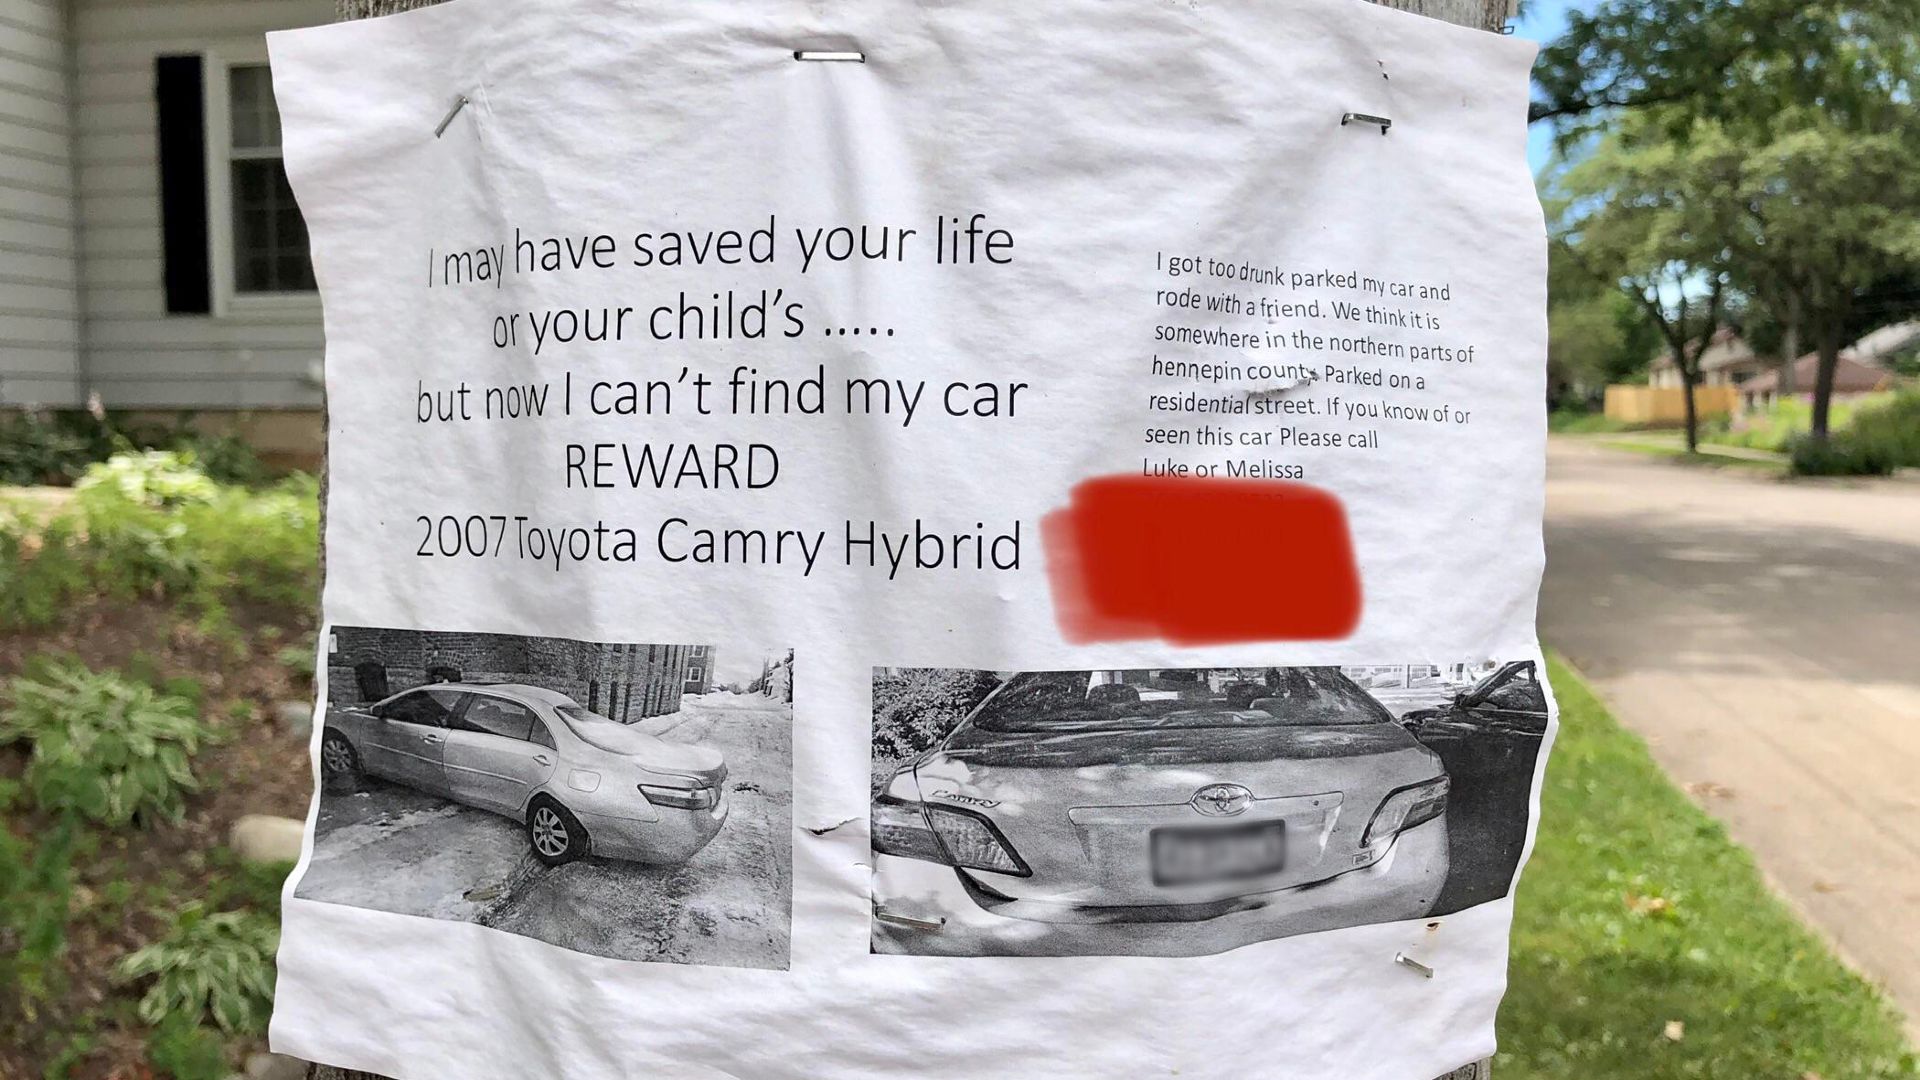 Az autóját keresi egy minneapolisi férfi, de nem azért mert ellopták